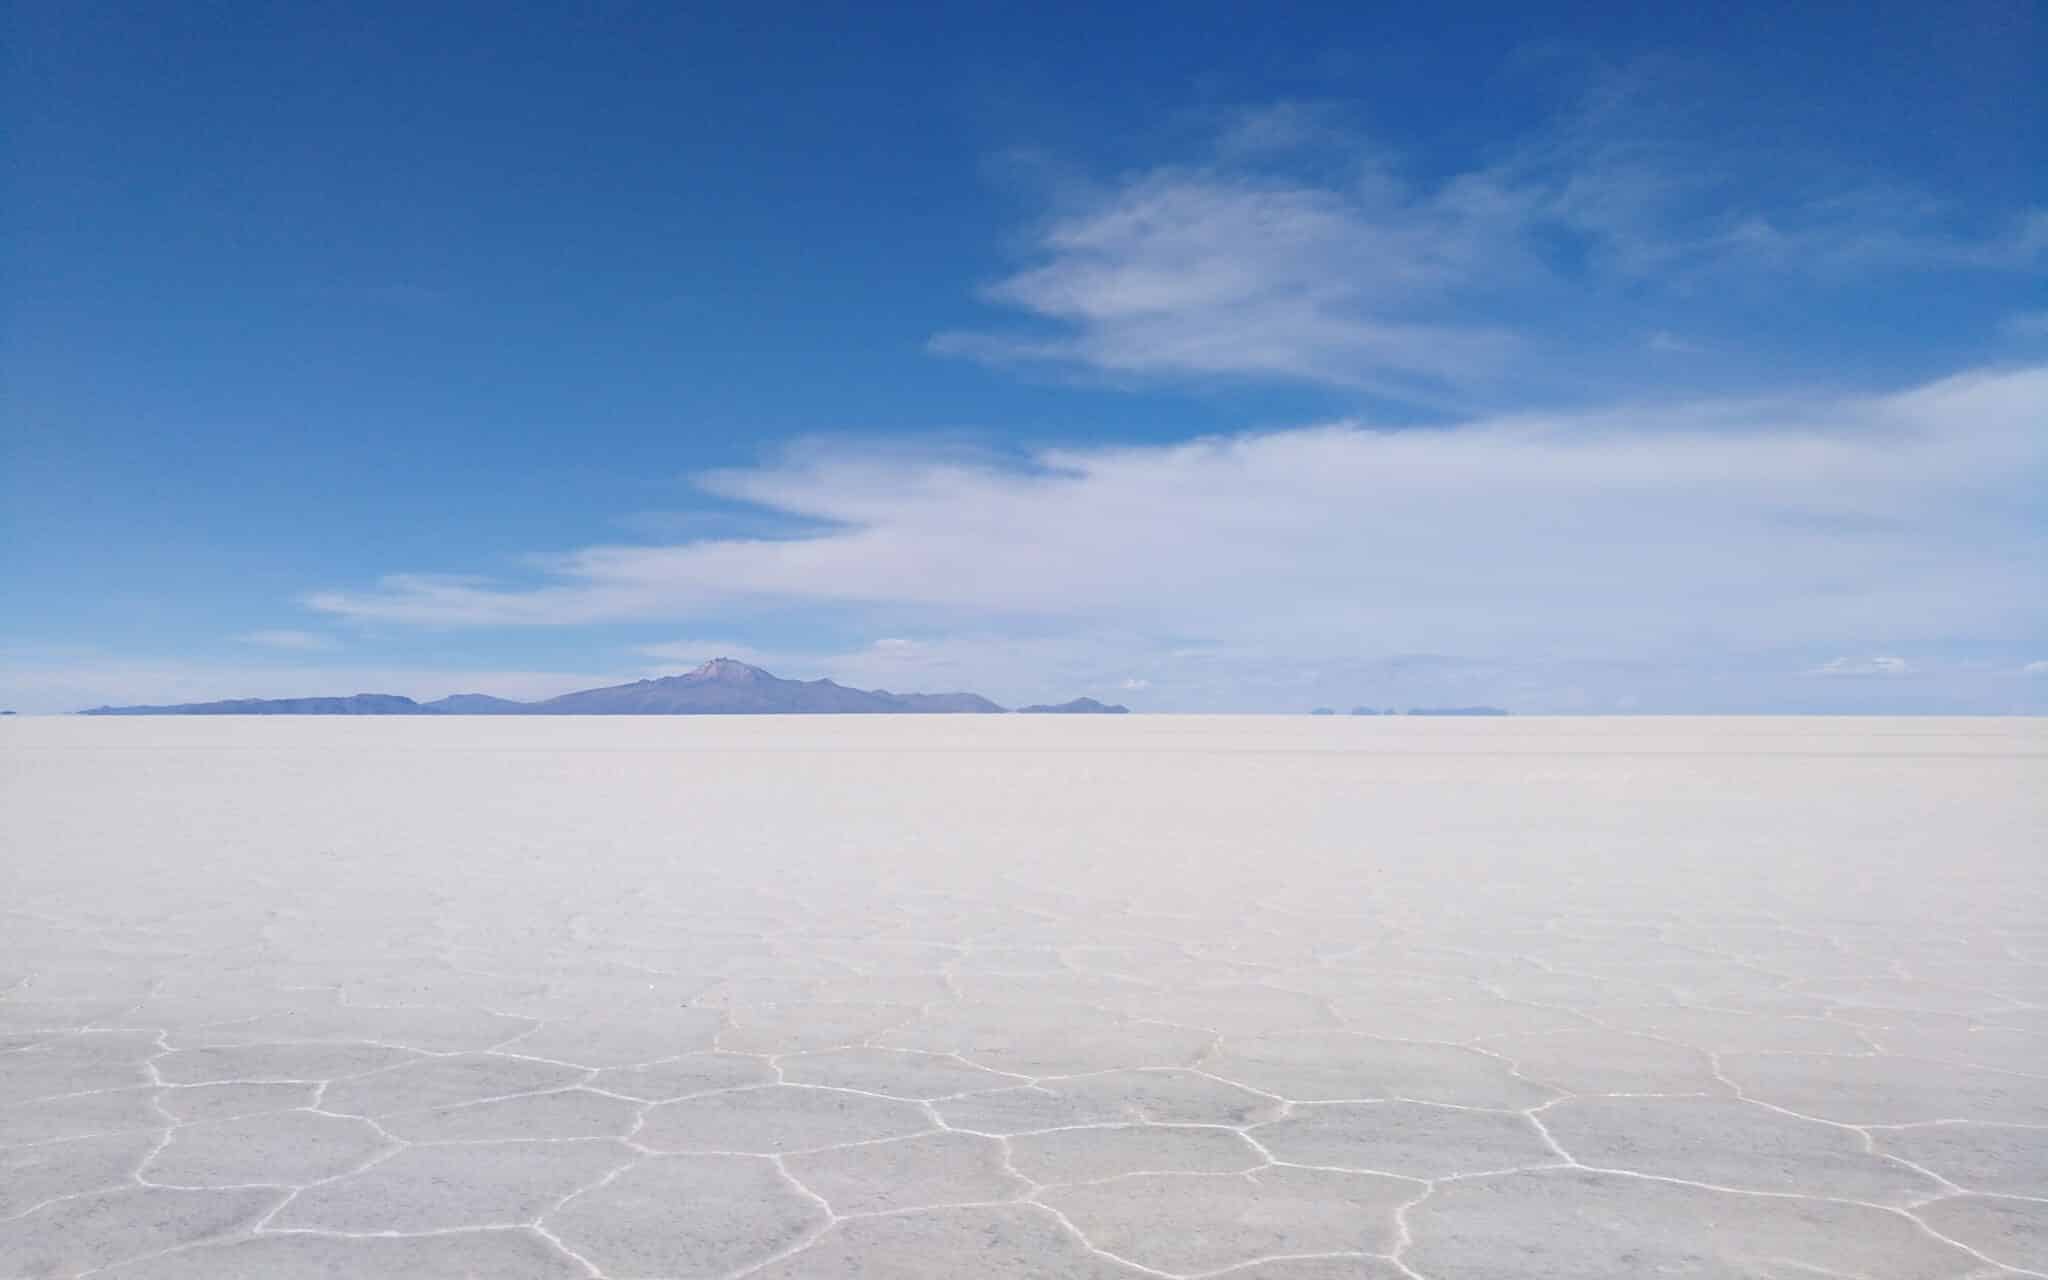 Der Salar de Uyuni, im Vordergrund gut erkennbar die Salzkruste als Boden, am Horizont Berge.